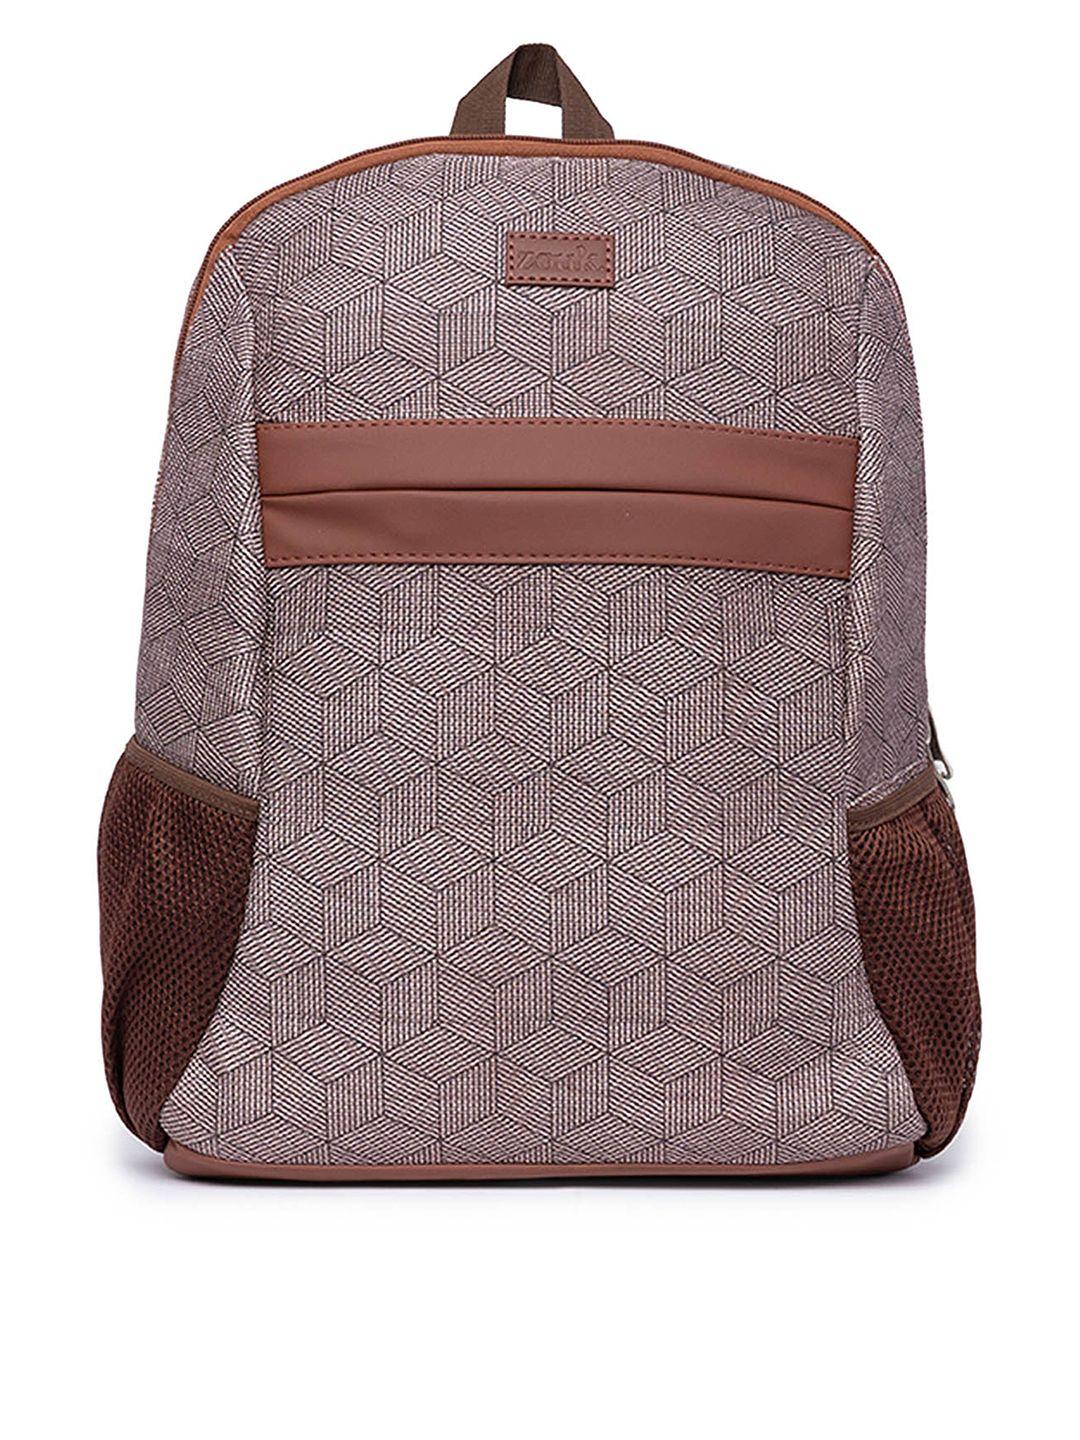 zouk-men-printed-vegan-leather-backpack